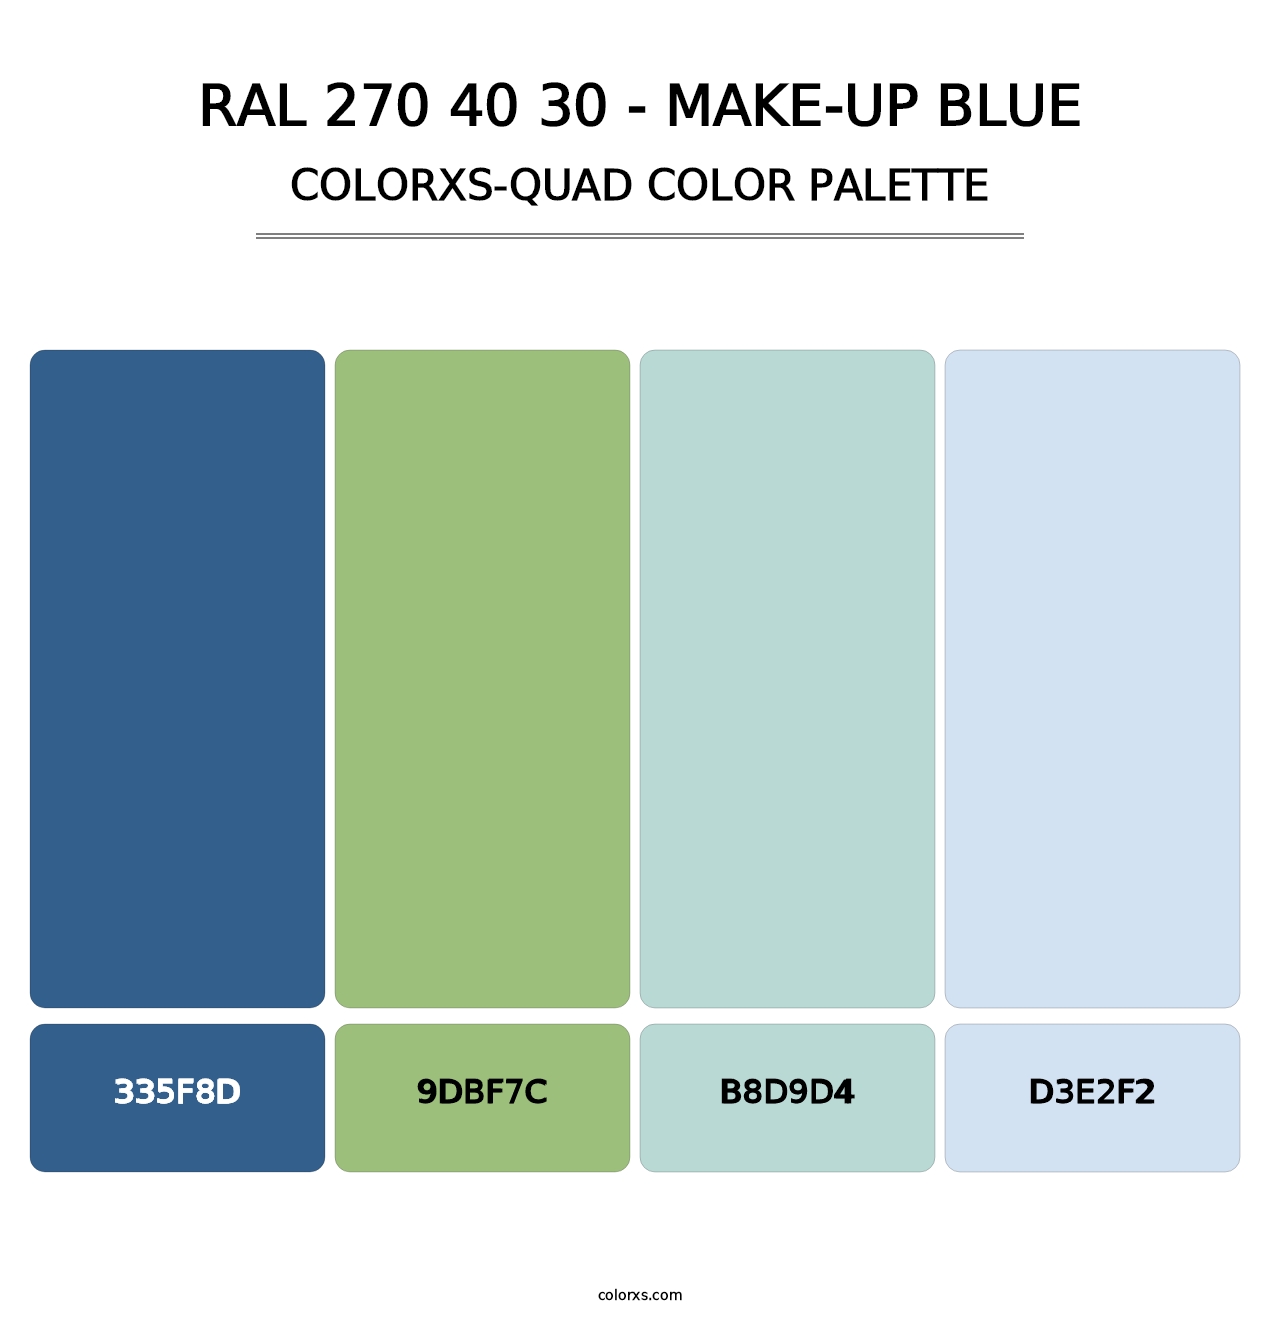 RAL 270 40 30 - Make-Up Blue - Colorxs Quad Palette